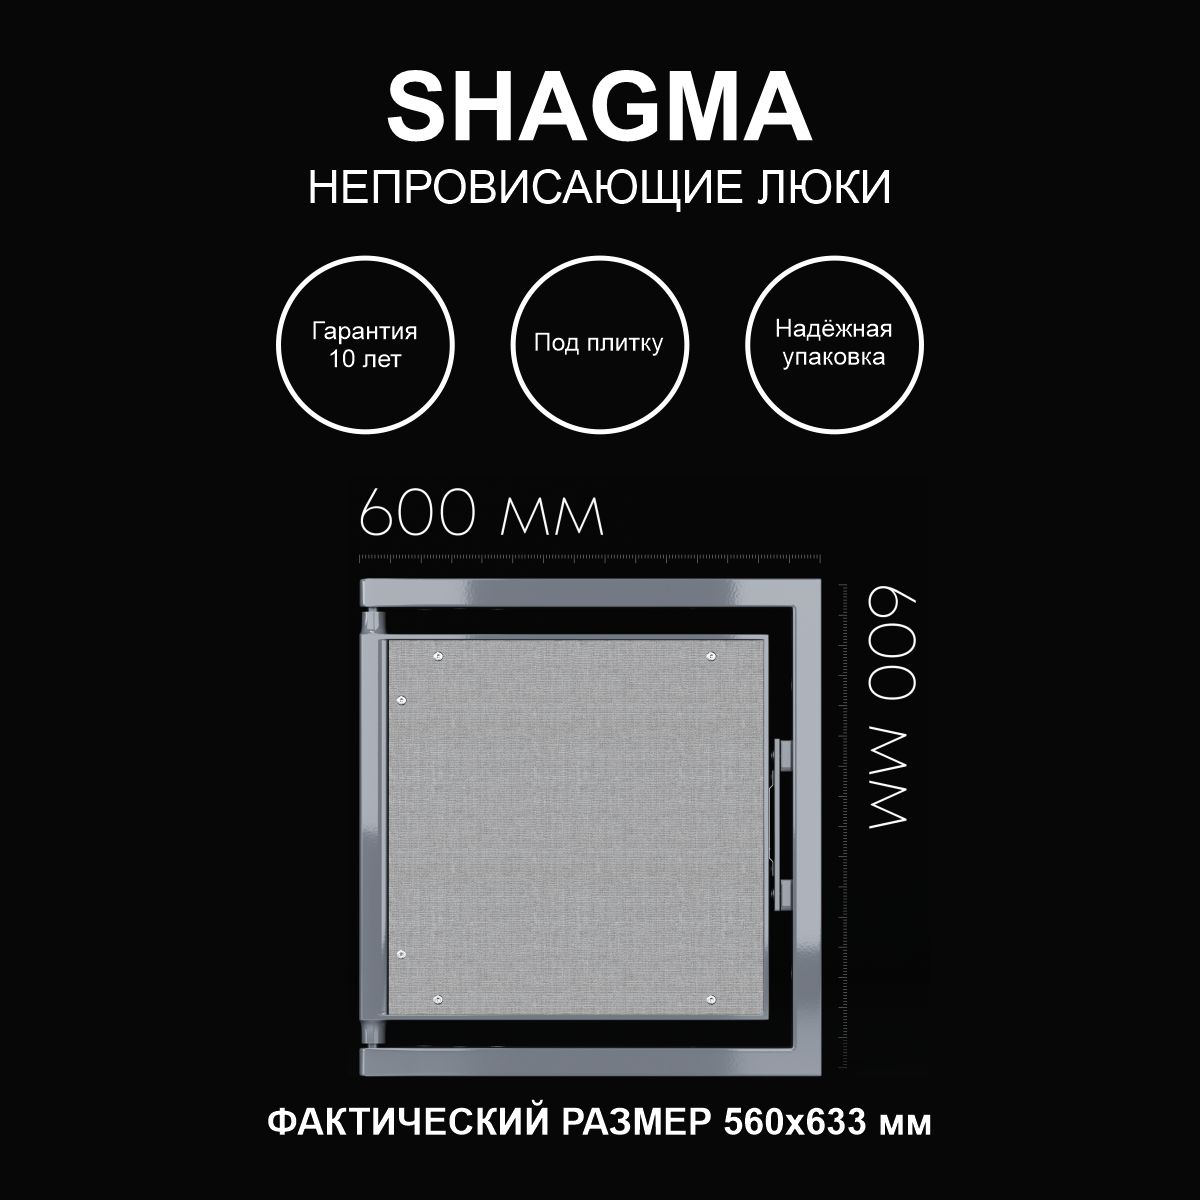 Люк SHAGMA ревизионный под плитку сантехнический 600х600 мм